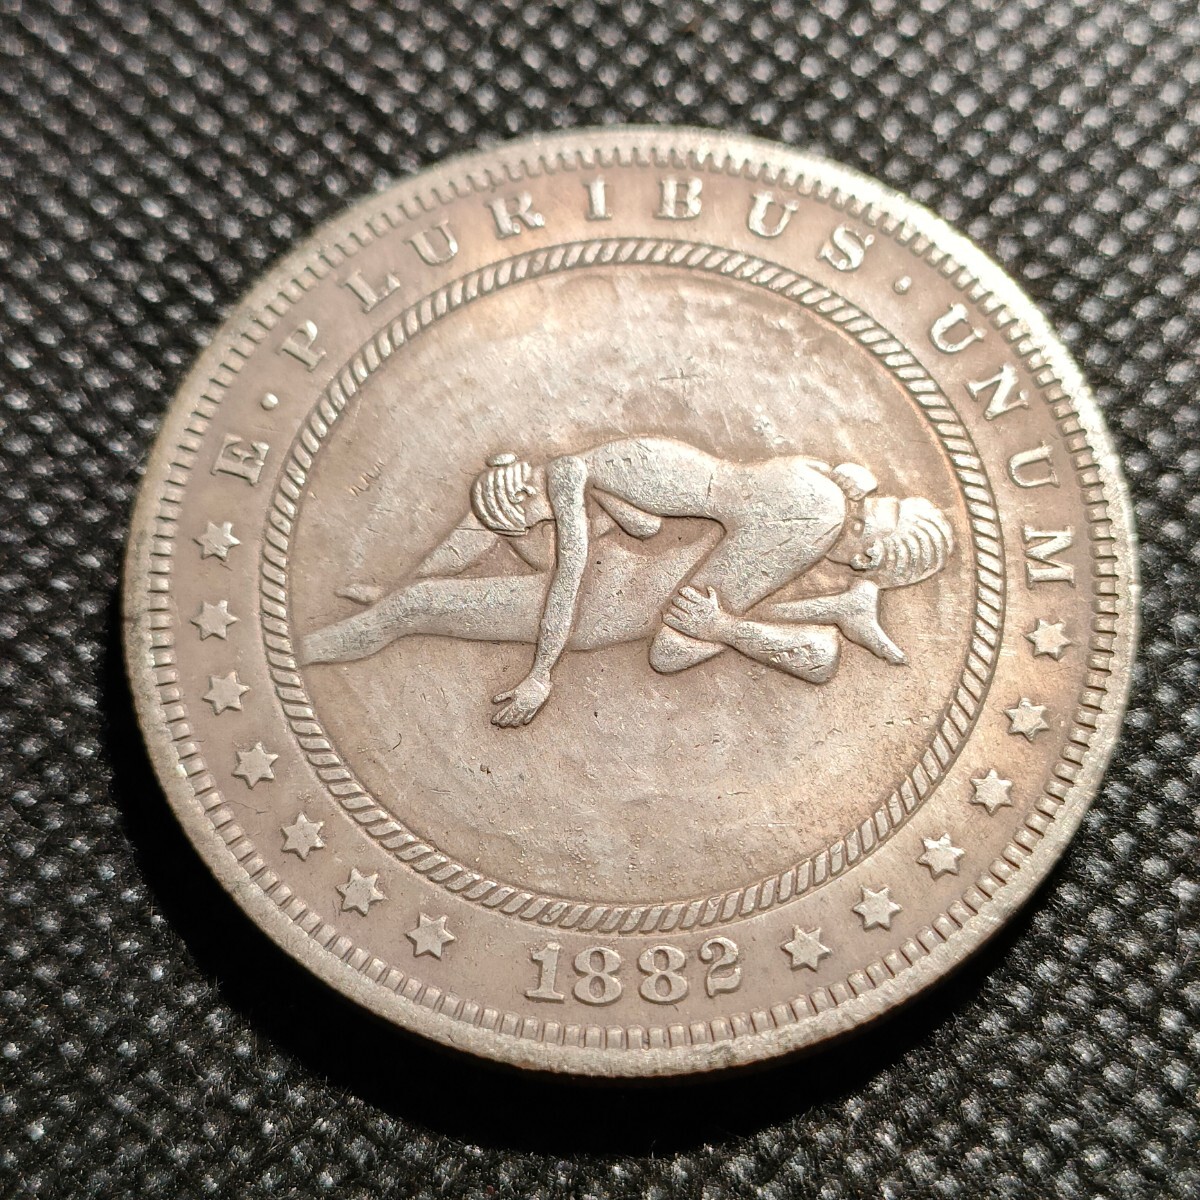 7410 アメリカ古銭 ルンペン 約38mm イーグル チャレンジコイン ゴルフマーカー コイン アンティーク ホーボーの画像1